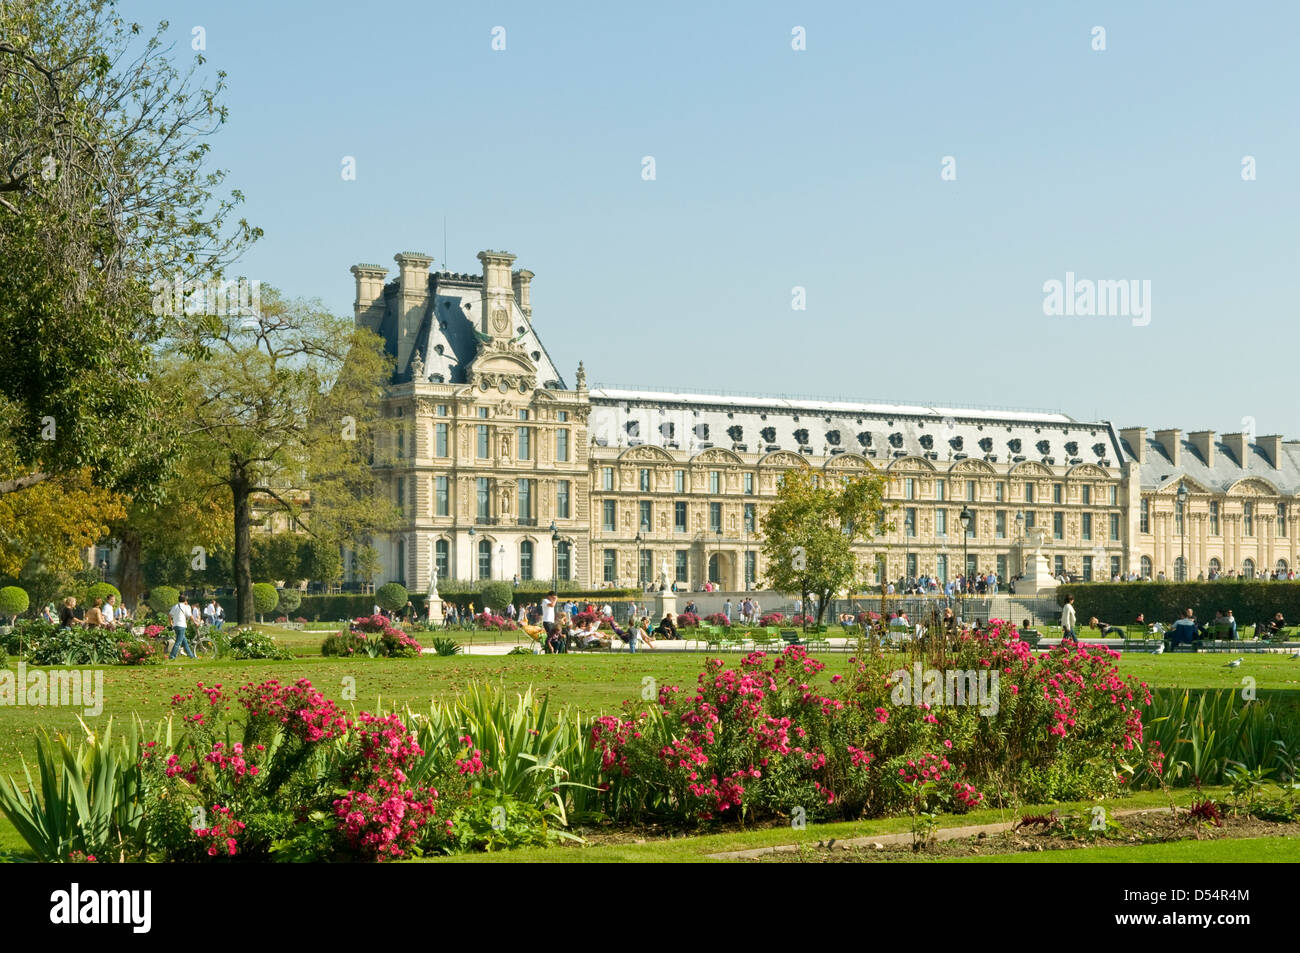 Palais du Louvre and Jardin des Tuileries, Paris, France Stock Photo